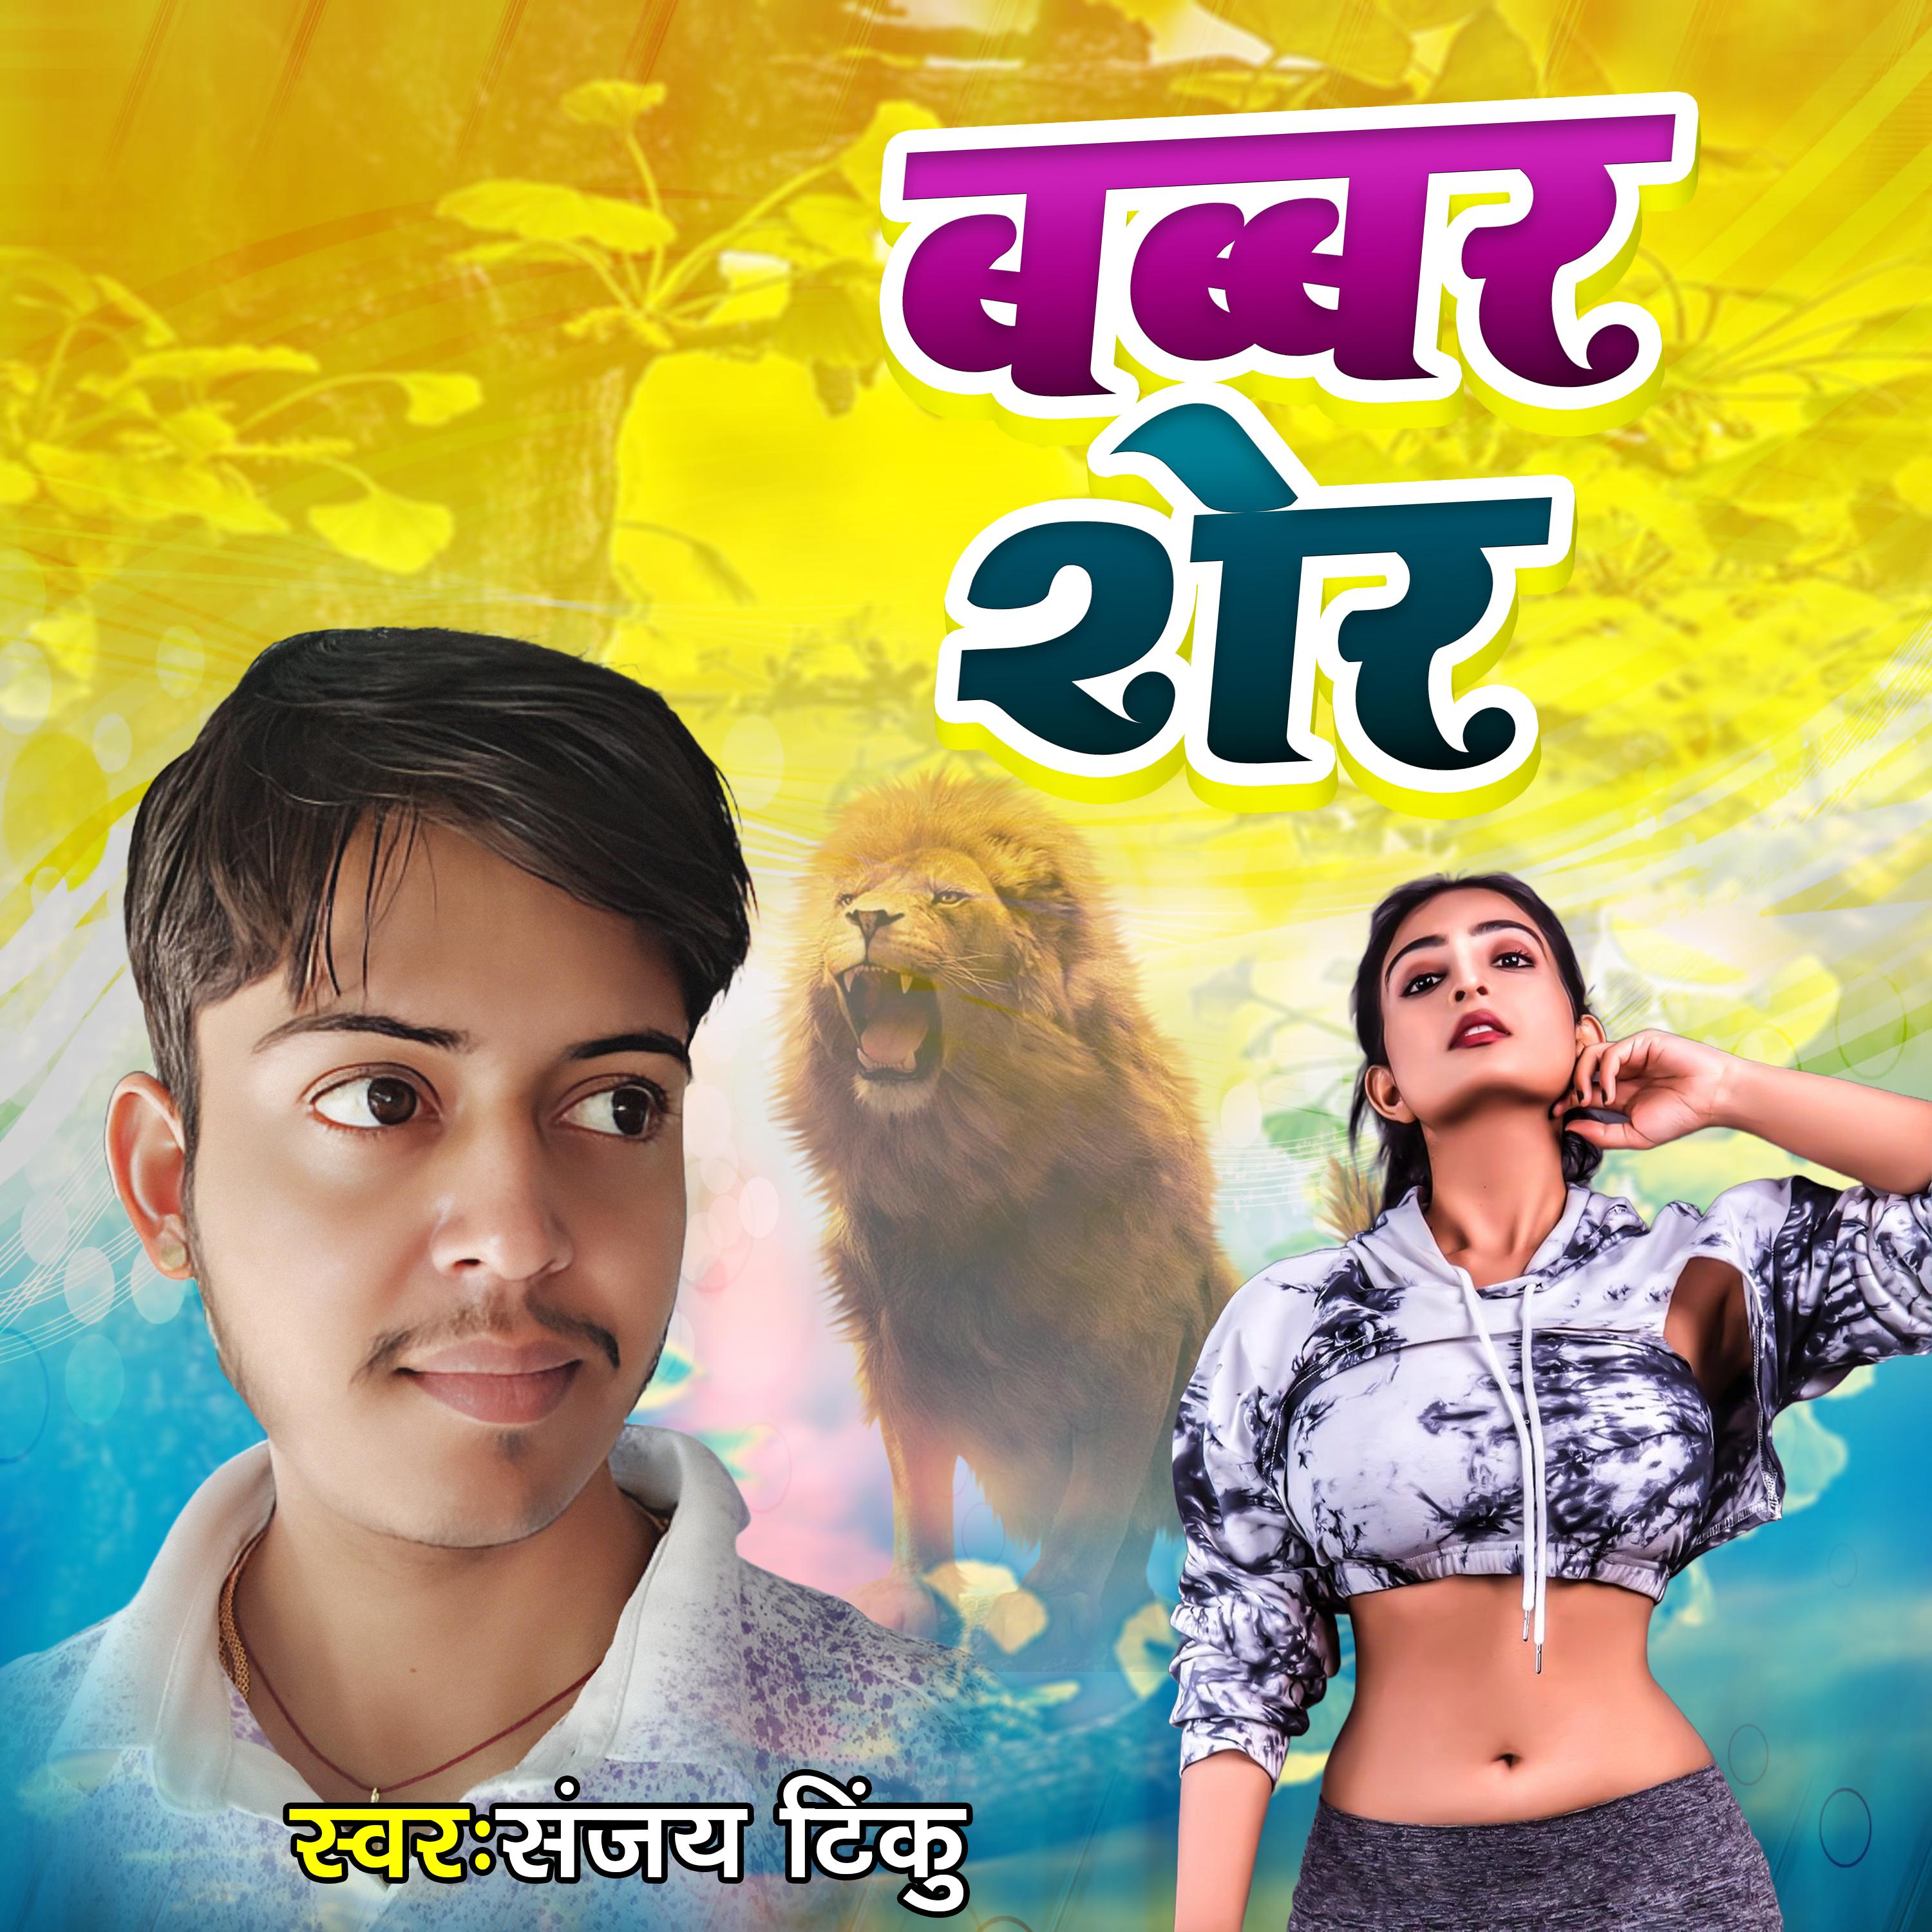 Постер альбома Babbar Sher